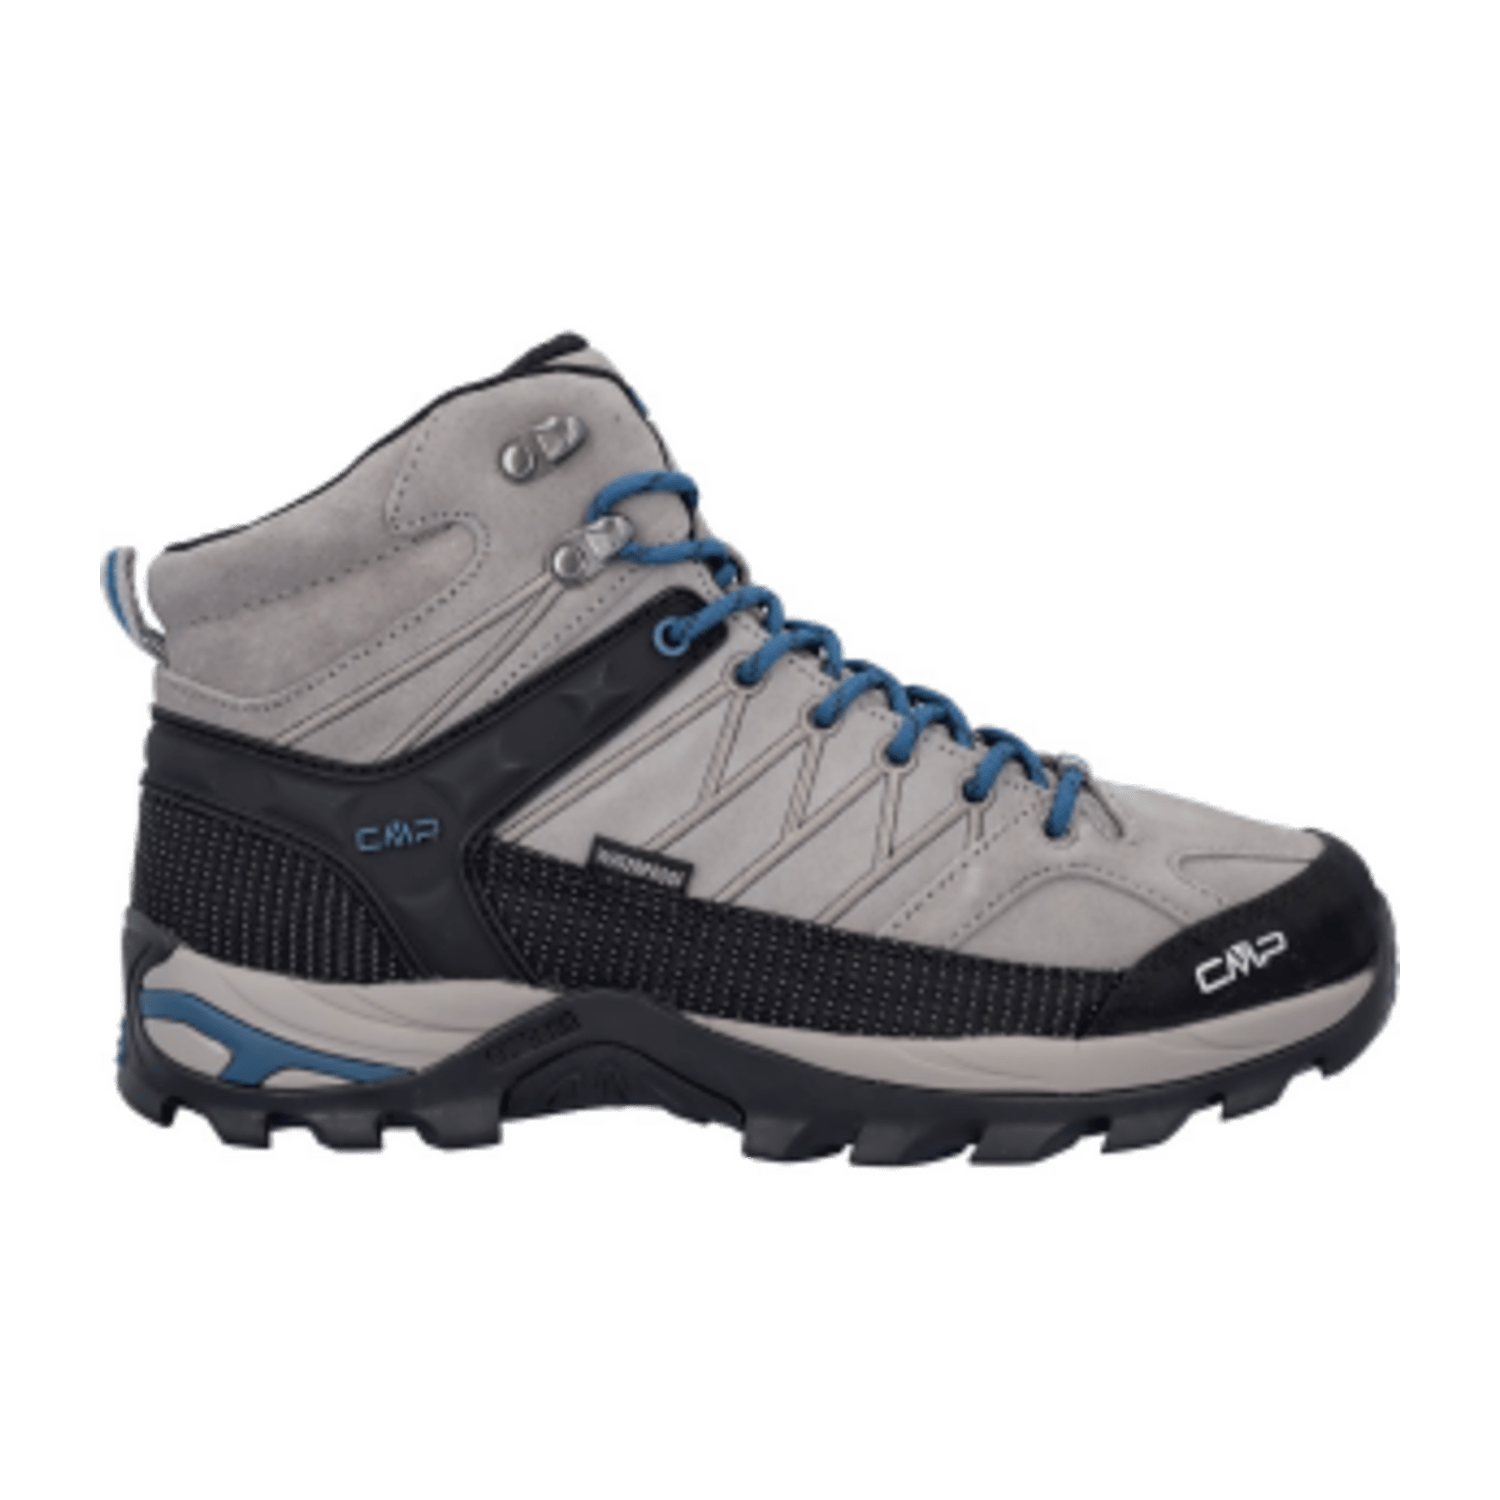 CMP Rigel Mid Trekking Shoe waterproof